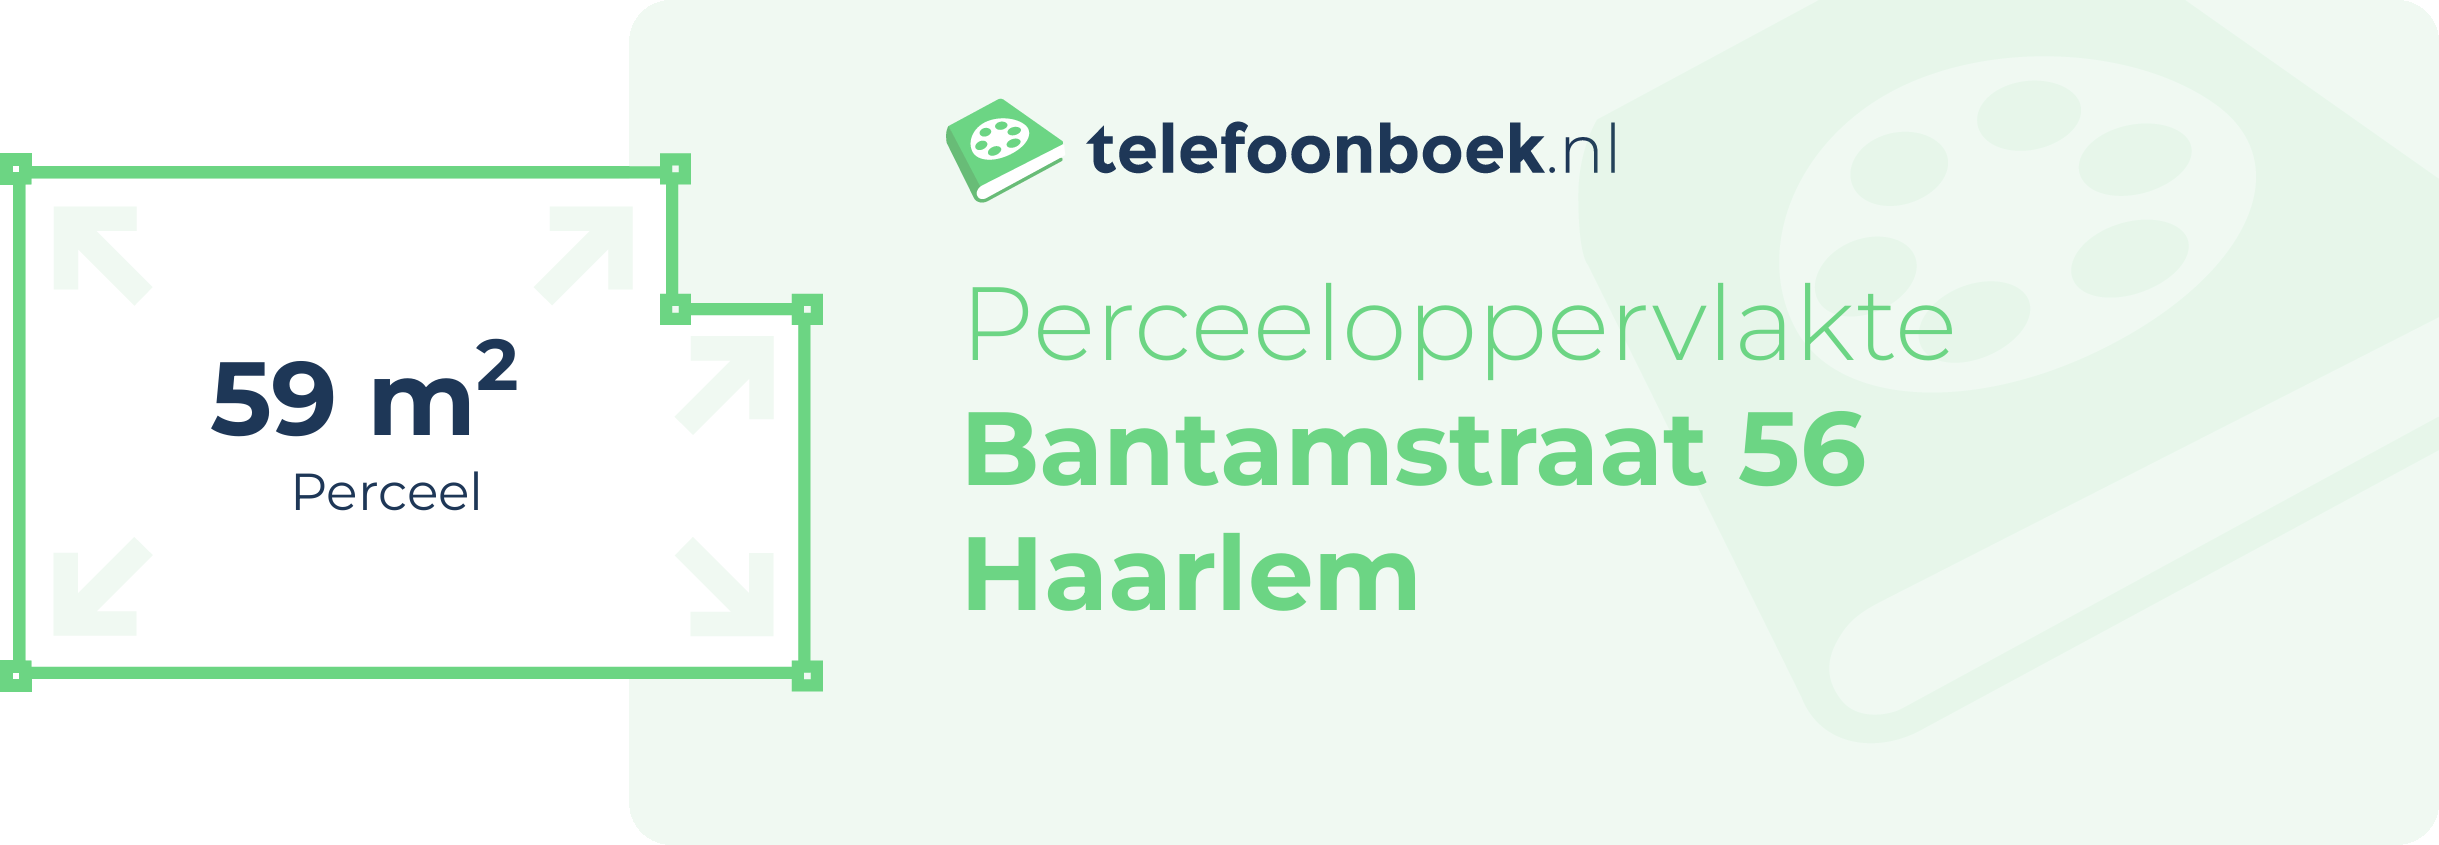 Perceeloppervlakte Bantamstraat 56 Haarlem